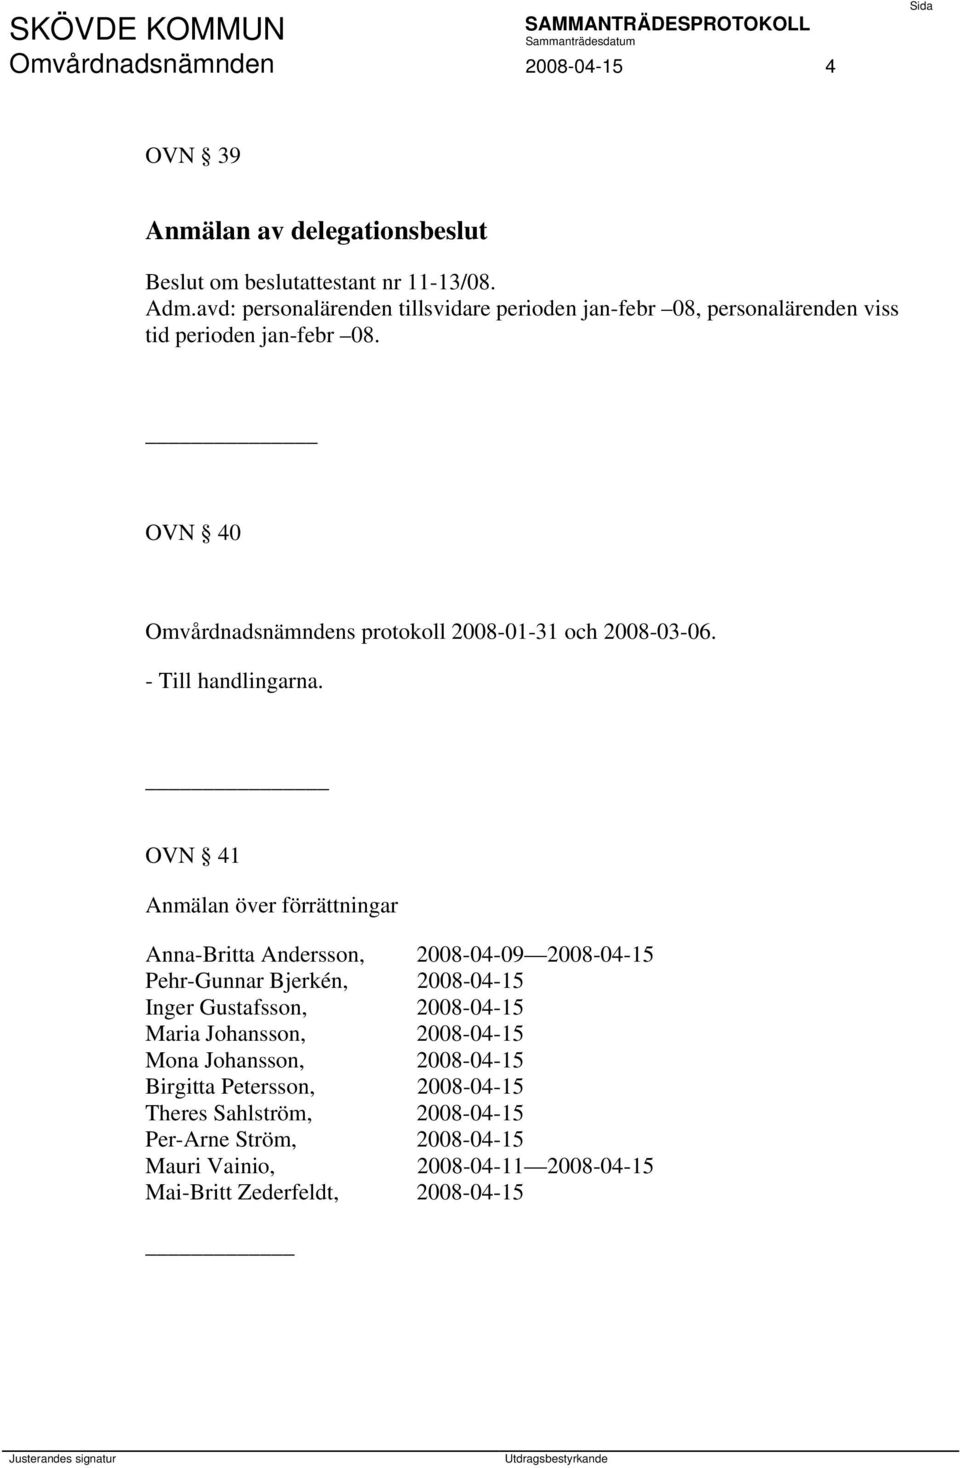 OVN 40 Omvårdnadsnämndens protokoll 2008-01-31 och 2008-03-06. - Till handlingarna.